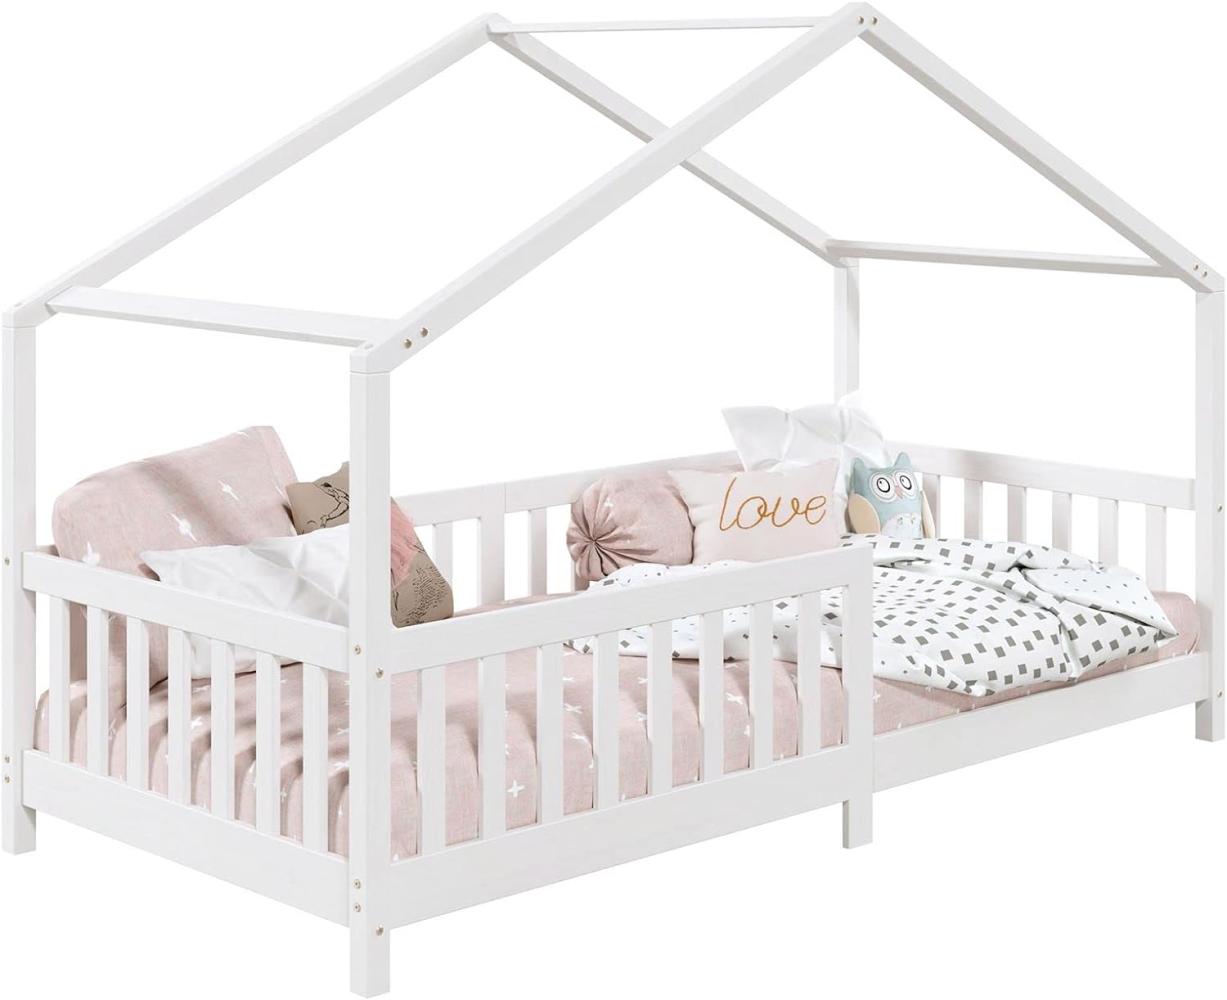 IDIMEX Hausbett LISAN aus massiver Kiefer in weiß, schönes Montessori Bett in 90 x 200 cm, stabiles Indianerbett mit Rausfallschutz und Dach Bild 1